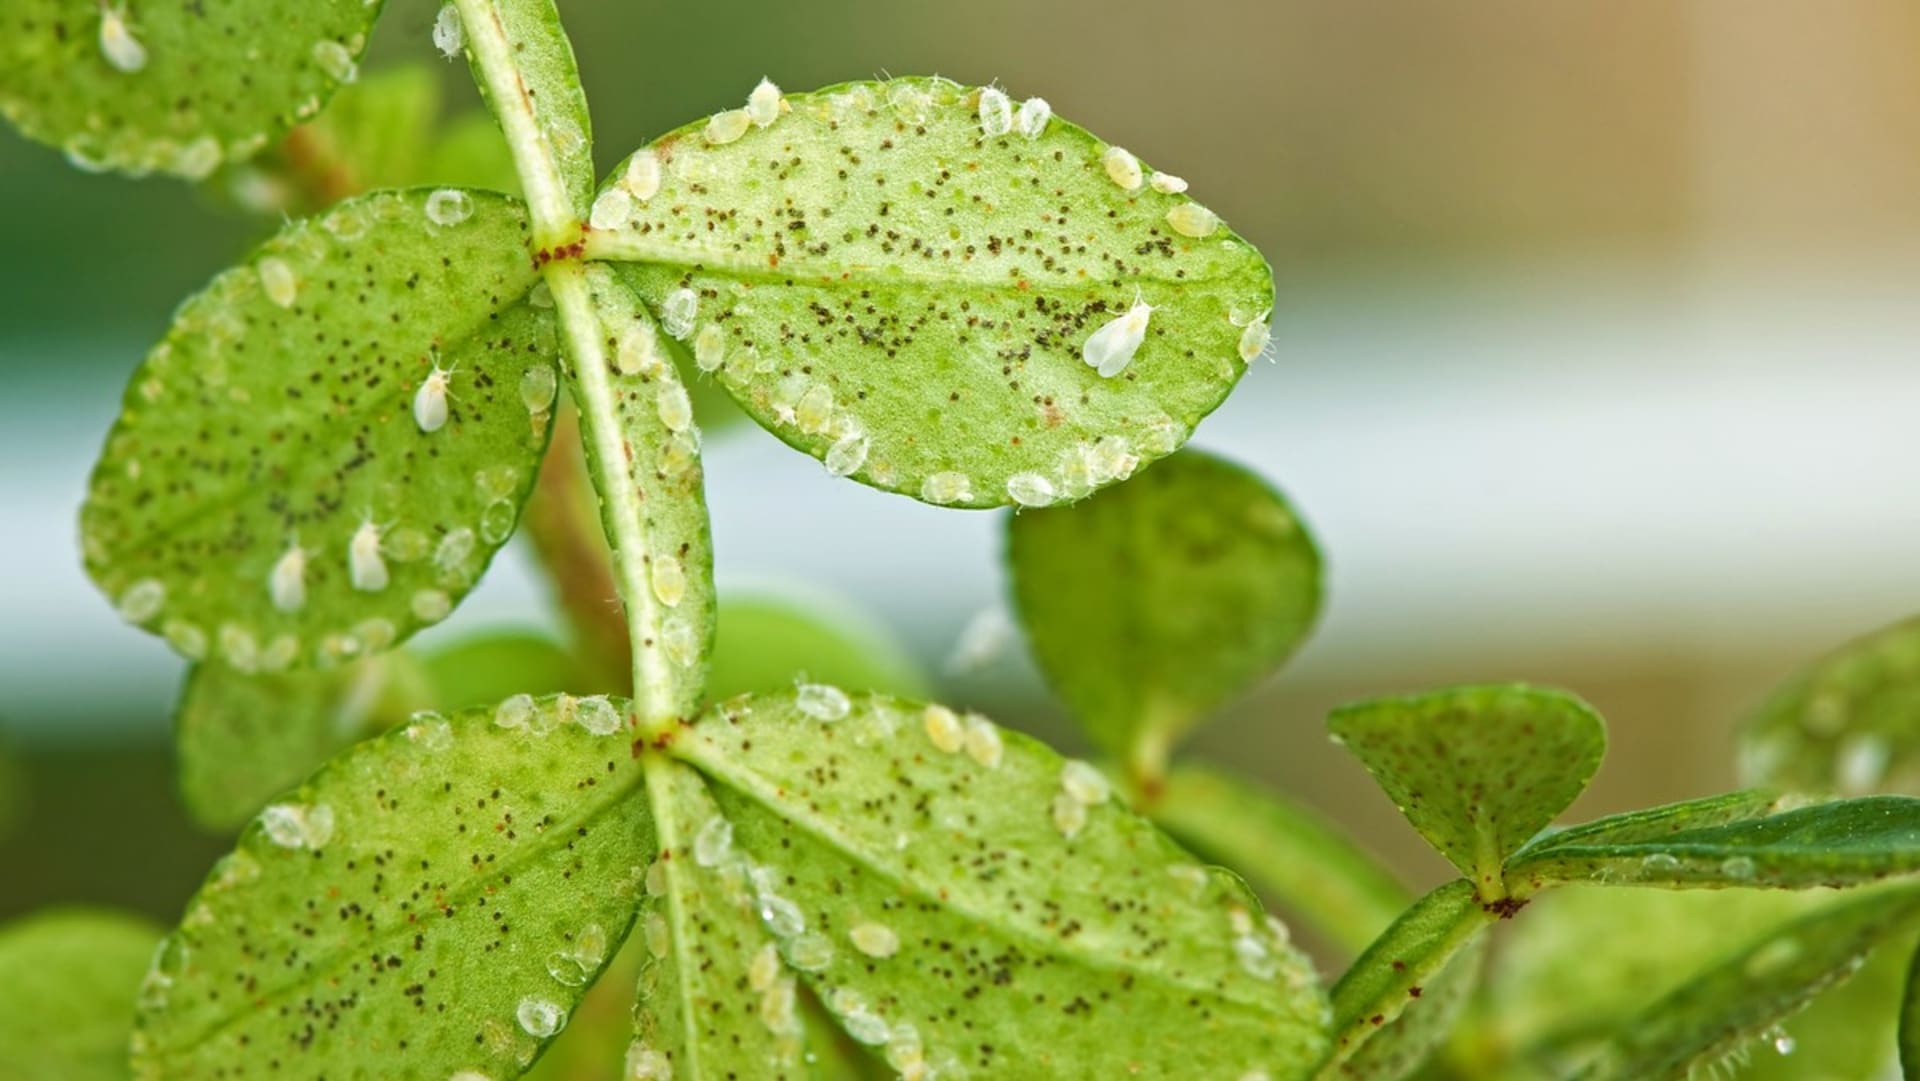 Molice, drobné bílé mušky skrývající se nejčastěji na spodní straně listů, patří k nejotravnějším a nejčastěji se vyskytujícím škůdcům na pokojových rostlinách.